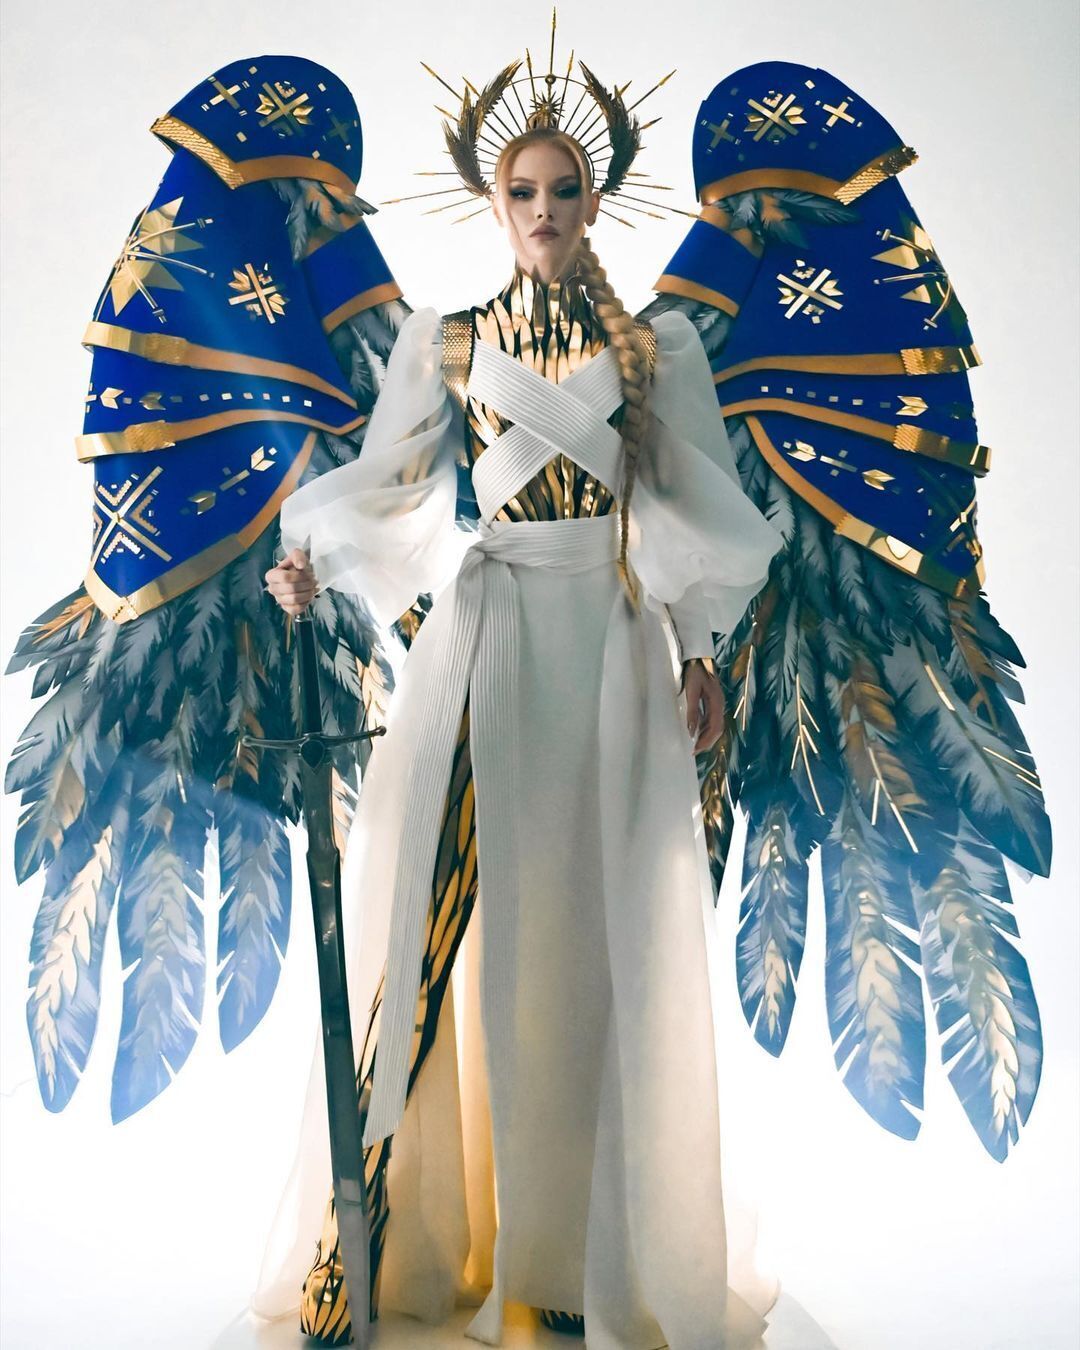 На "Міс Всесвіт" оголосили про старт голосування за найкращий національний костюм: як підтримати Україну